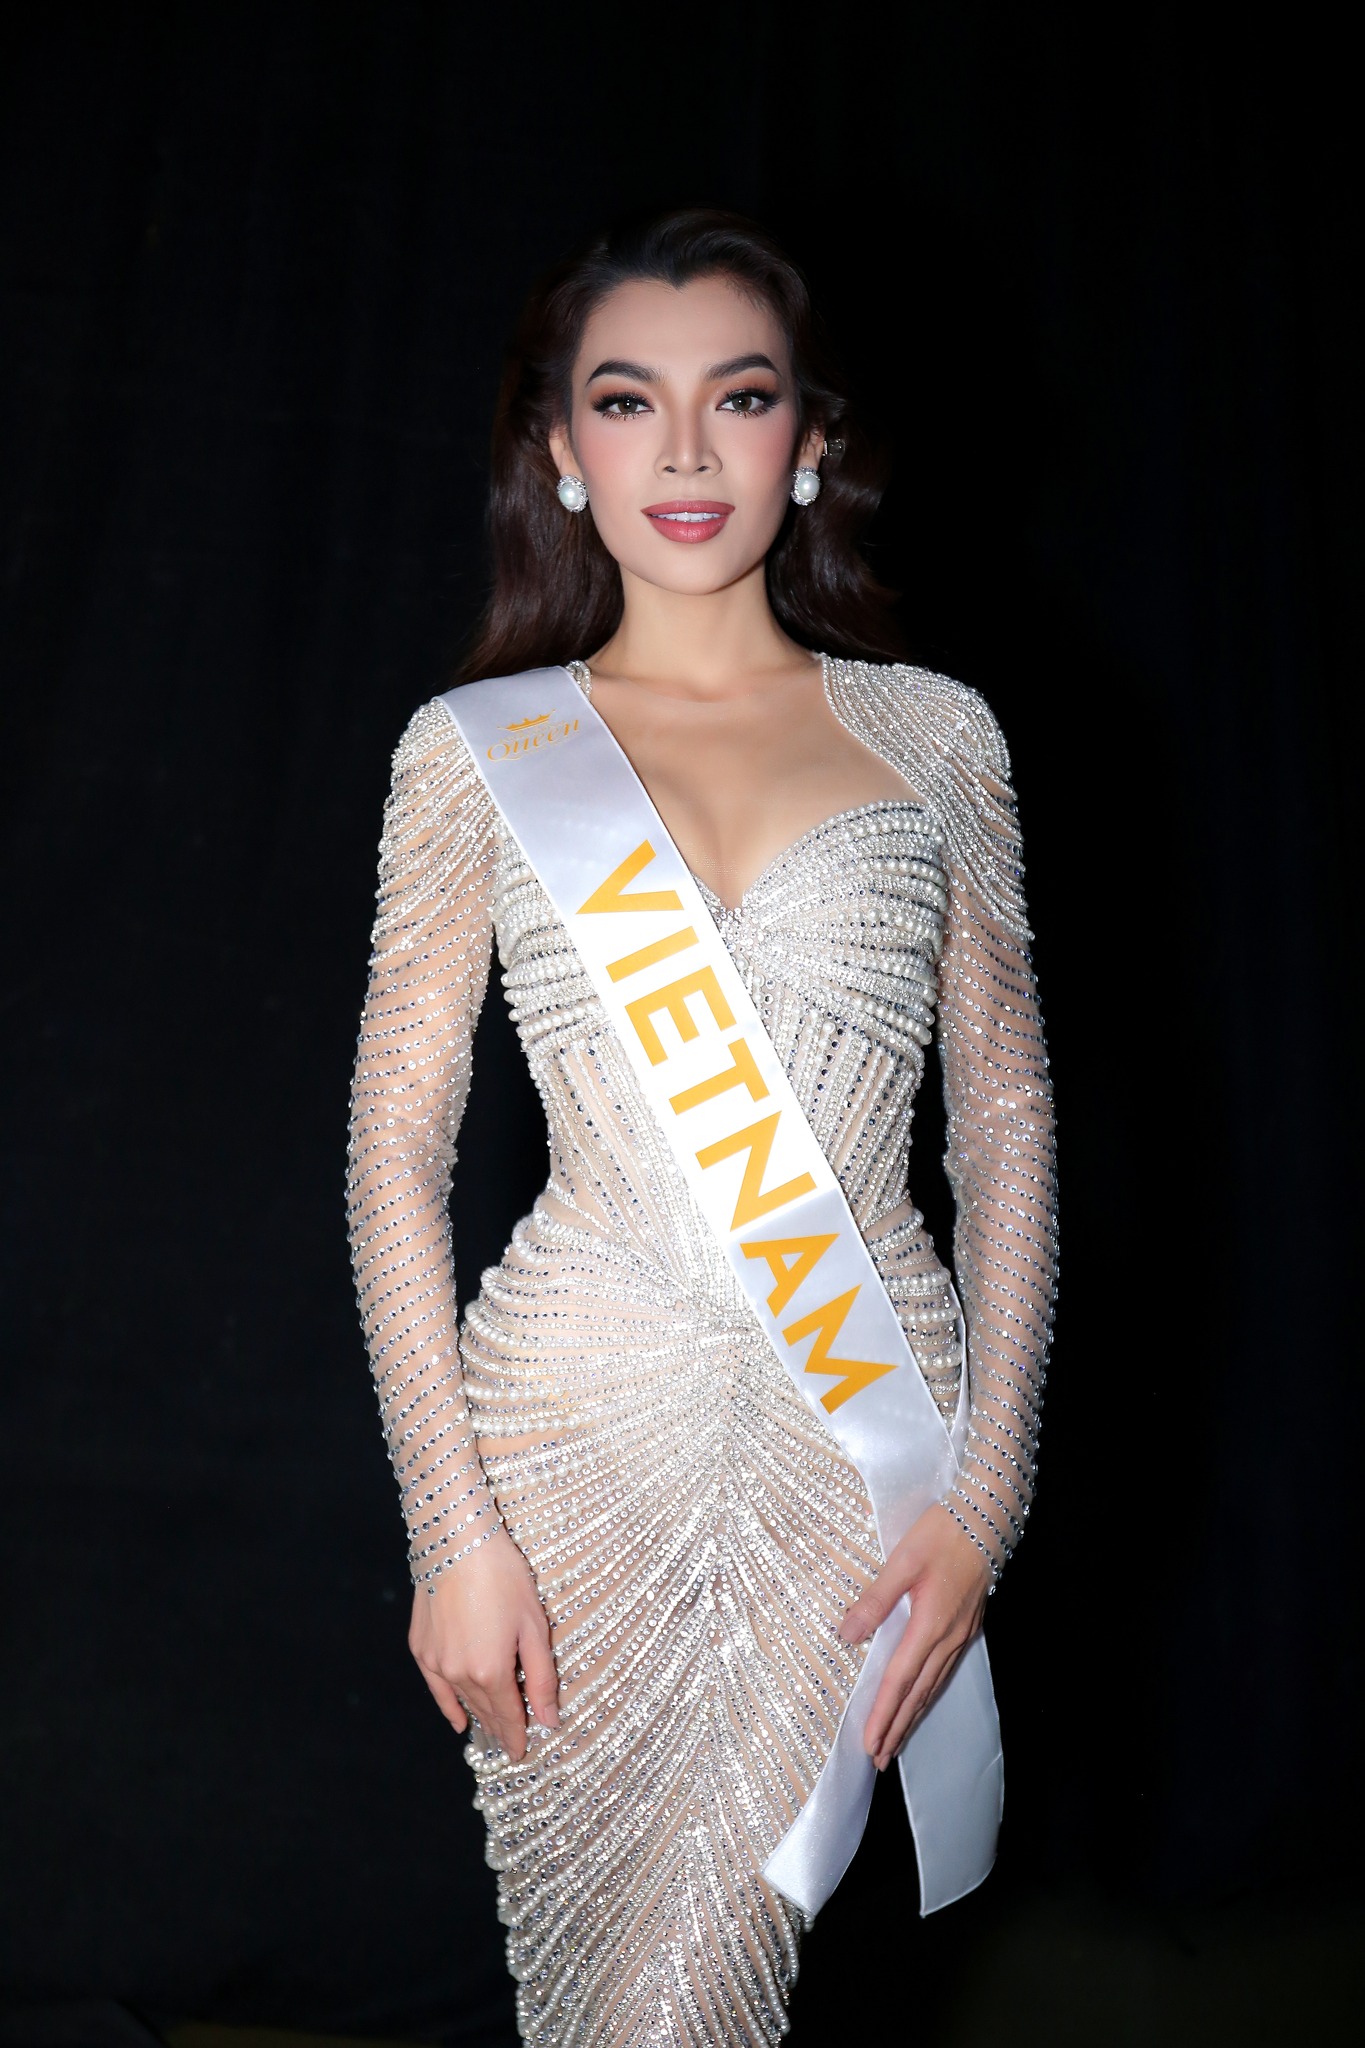 Mỹ nhân Philippines đăng quang Hoa hậu Chuyển giới Quốc tế 2022 - Ảnh 1.